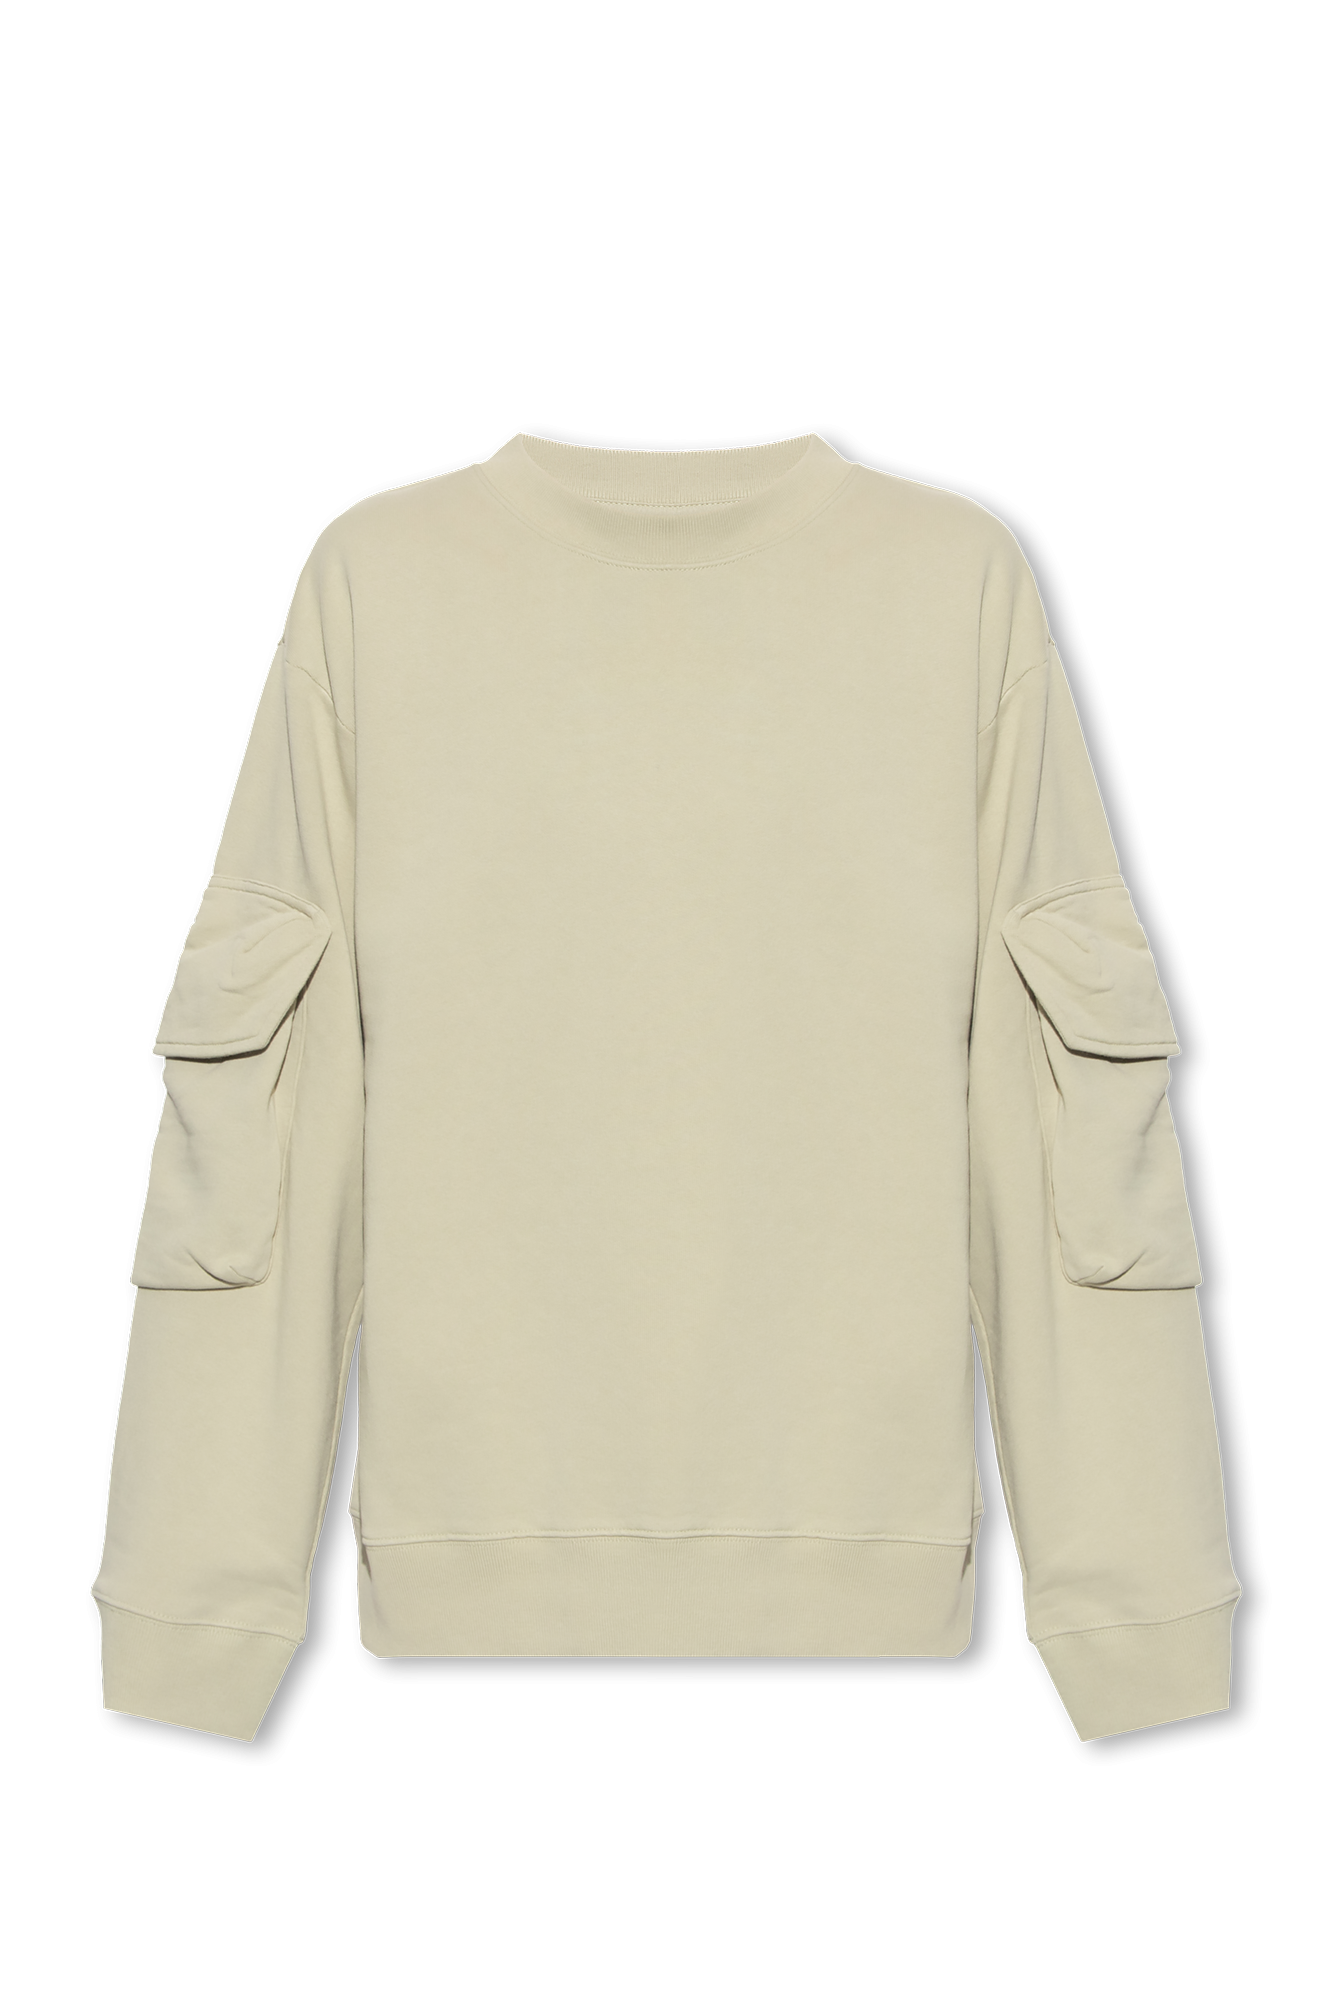 Dries Van Noten Sweatshirt with sleeve pocket